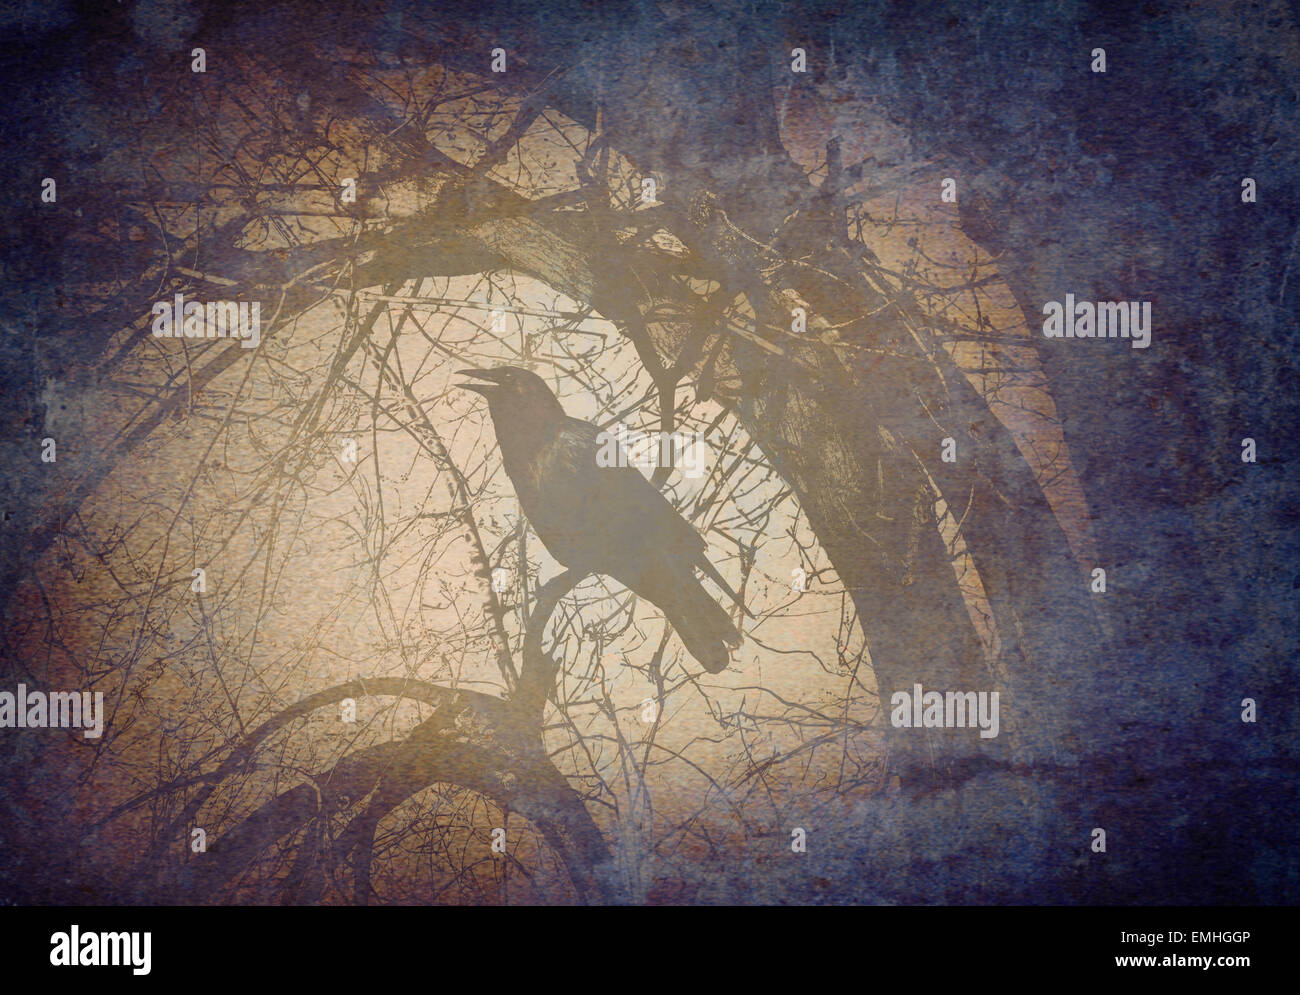 Crow effrayant sur une branche d'arbre d'appel et de concept qui chantent dans une sombre forêt magique mystique sur une texture de fond grunge old vintage comme un symbole de peur et de mystère. Banque D'Images